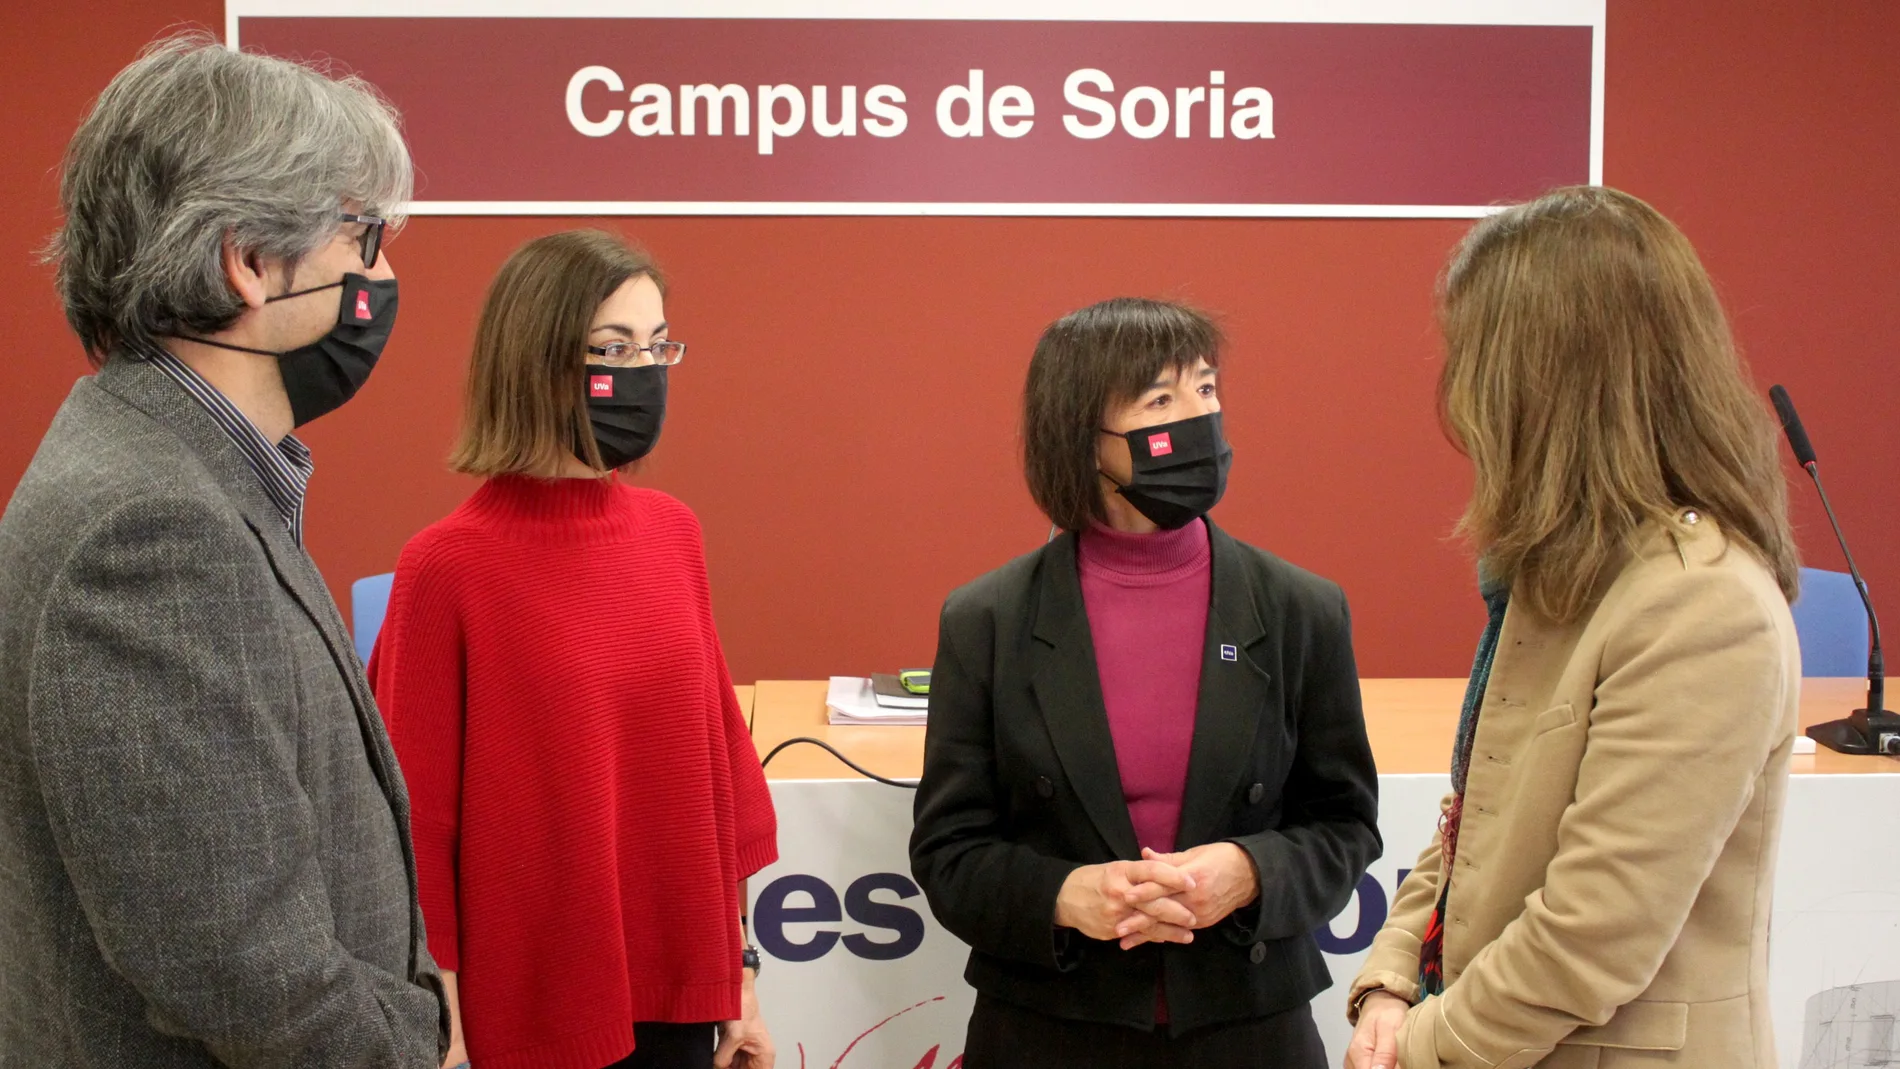 La candidata a rector de la Universidad de Valladolid, Helena Castán, se reúne con diversos colectivos para dar a conocer su programa electoral